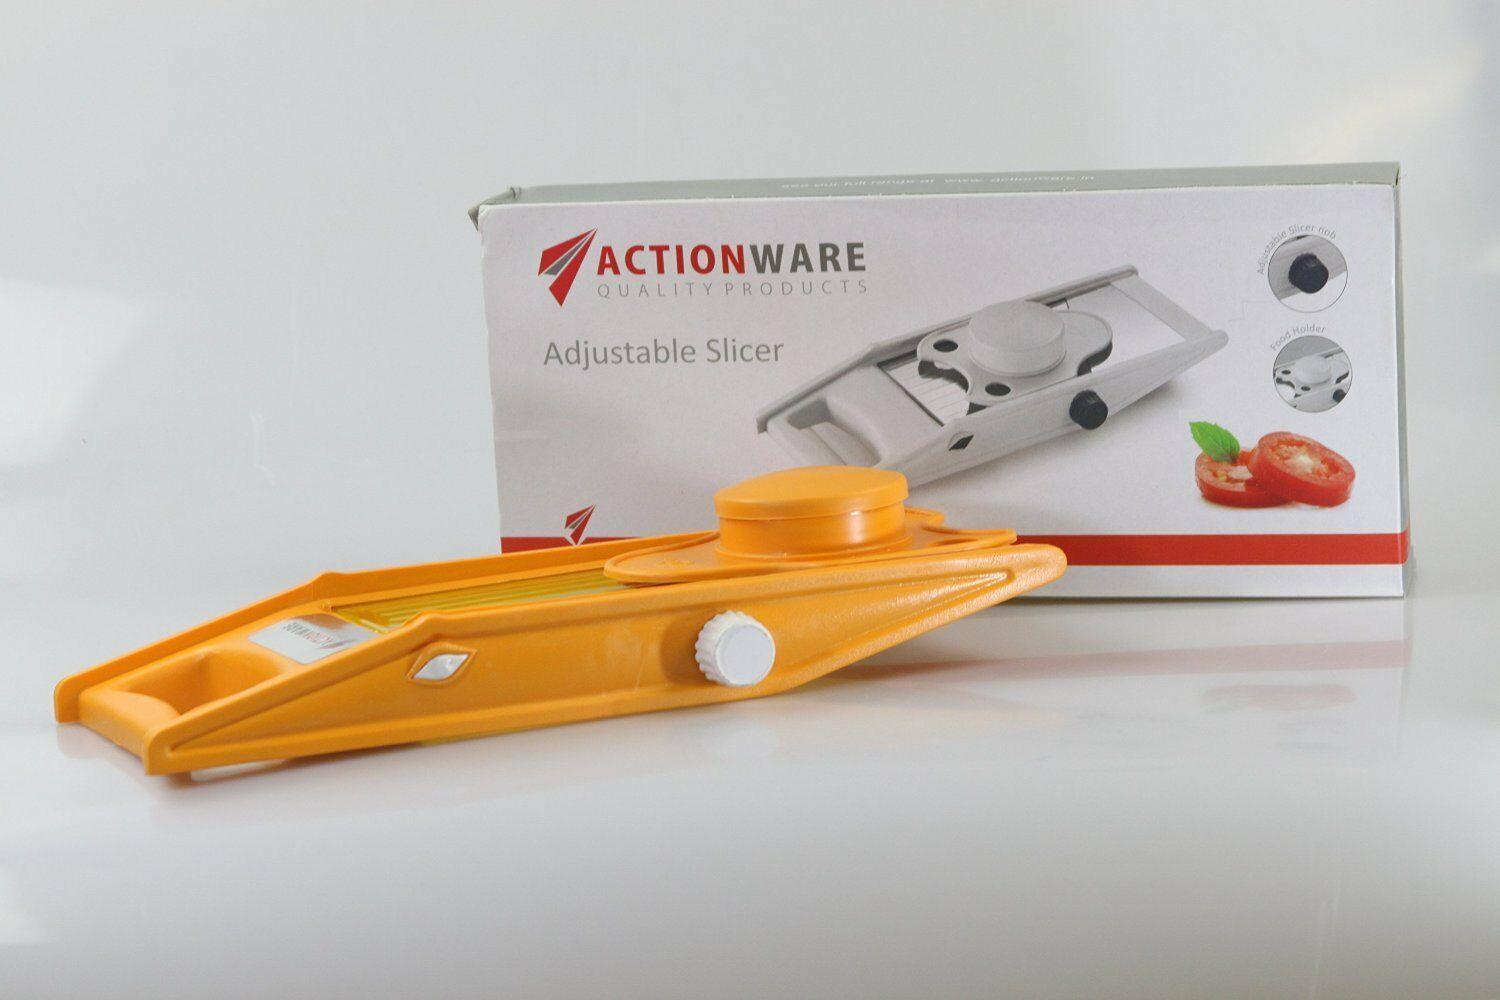 Actionware Adjustable Fruit & Veg Slicer ANDOLIN SLICER JULIENNE CUTTER CHOPPER